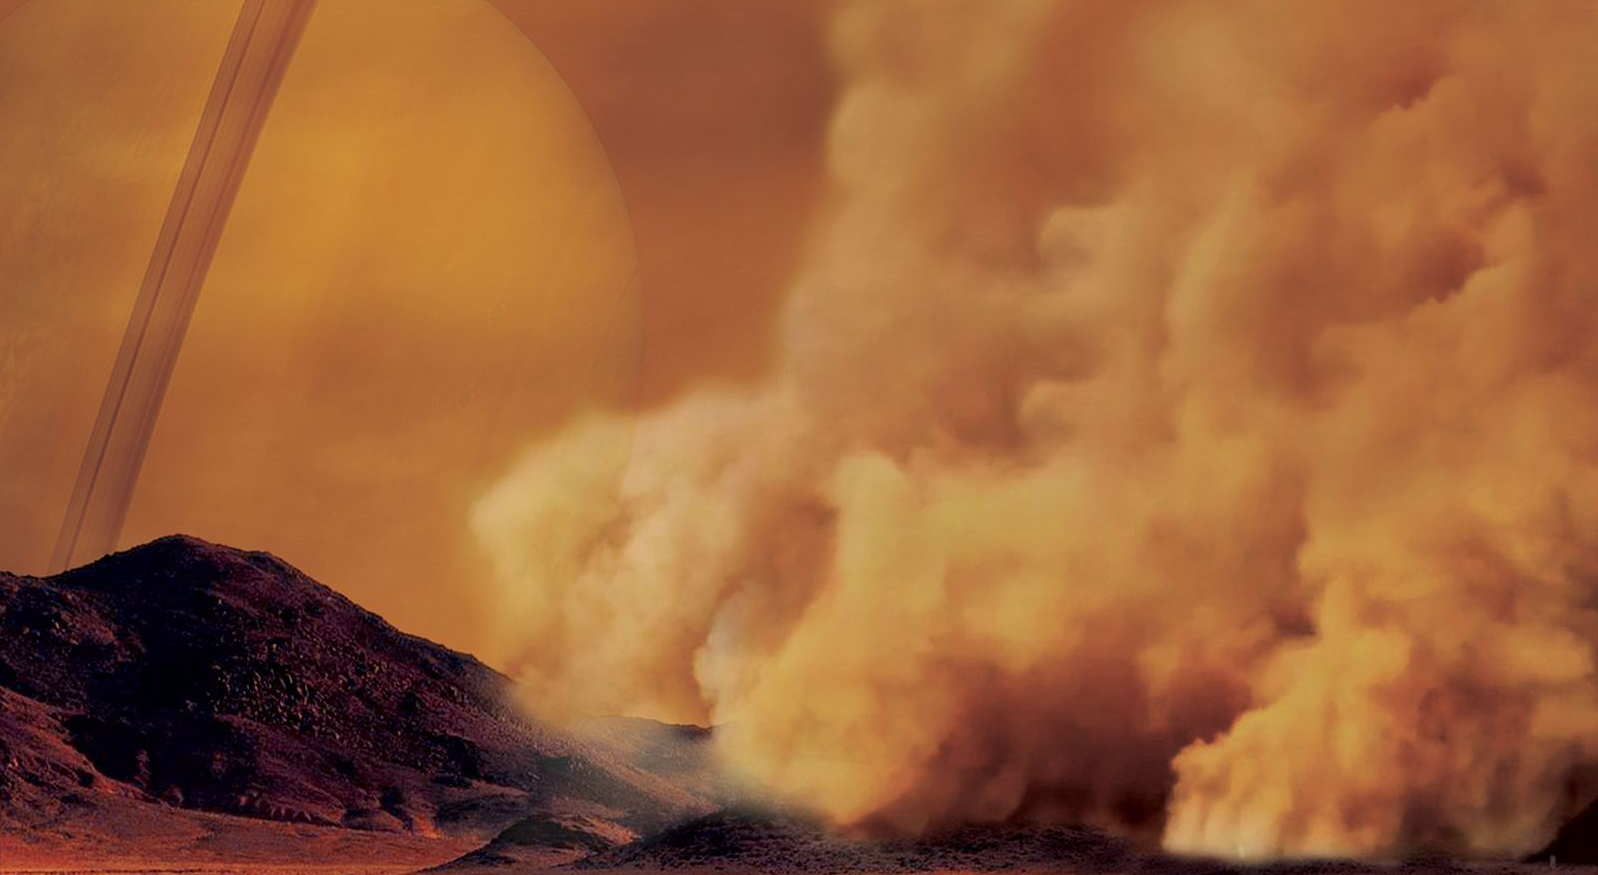 İlk keşfedilen toz fırtınaları Titan ile benzerlik göstermektedir Toprak